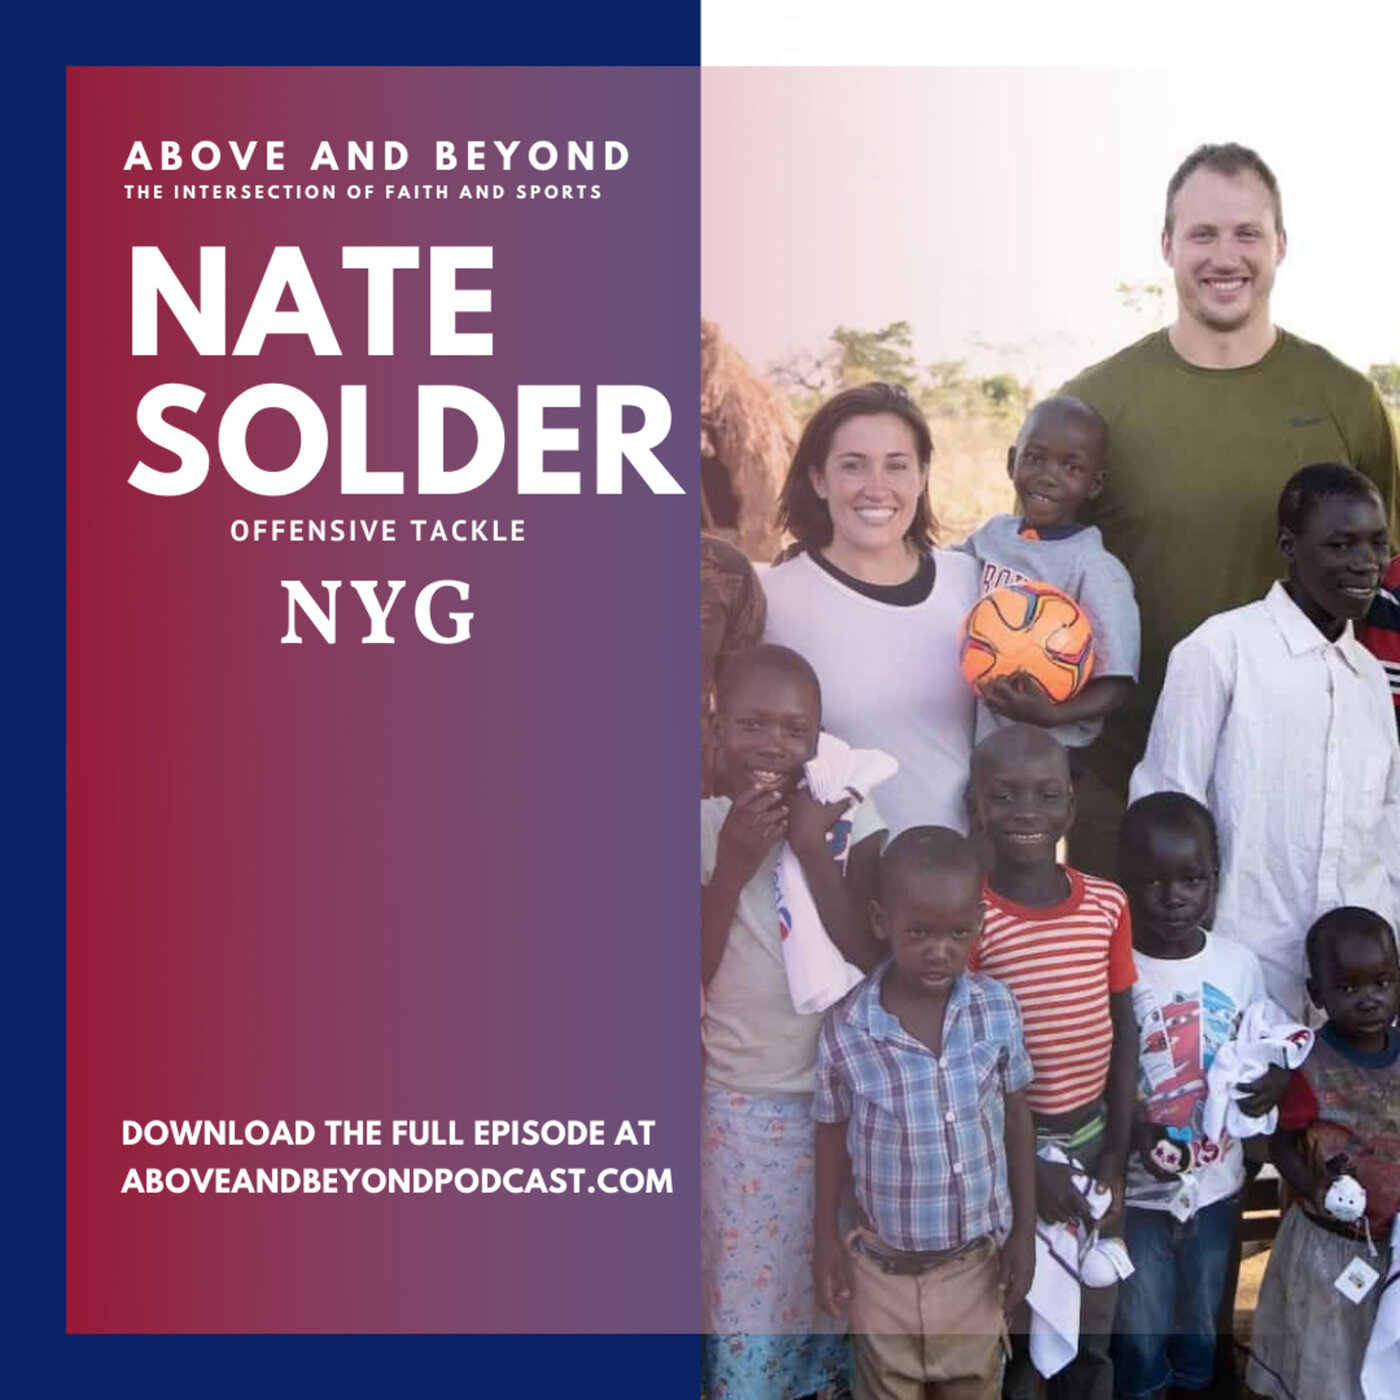 Nate Solder: A Heart Transformed